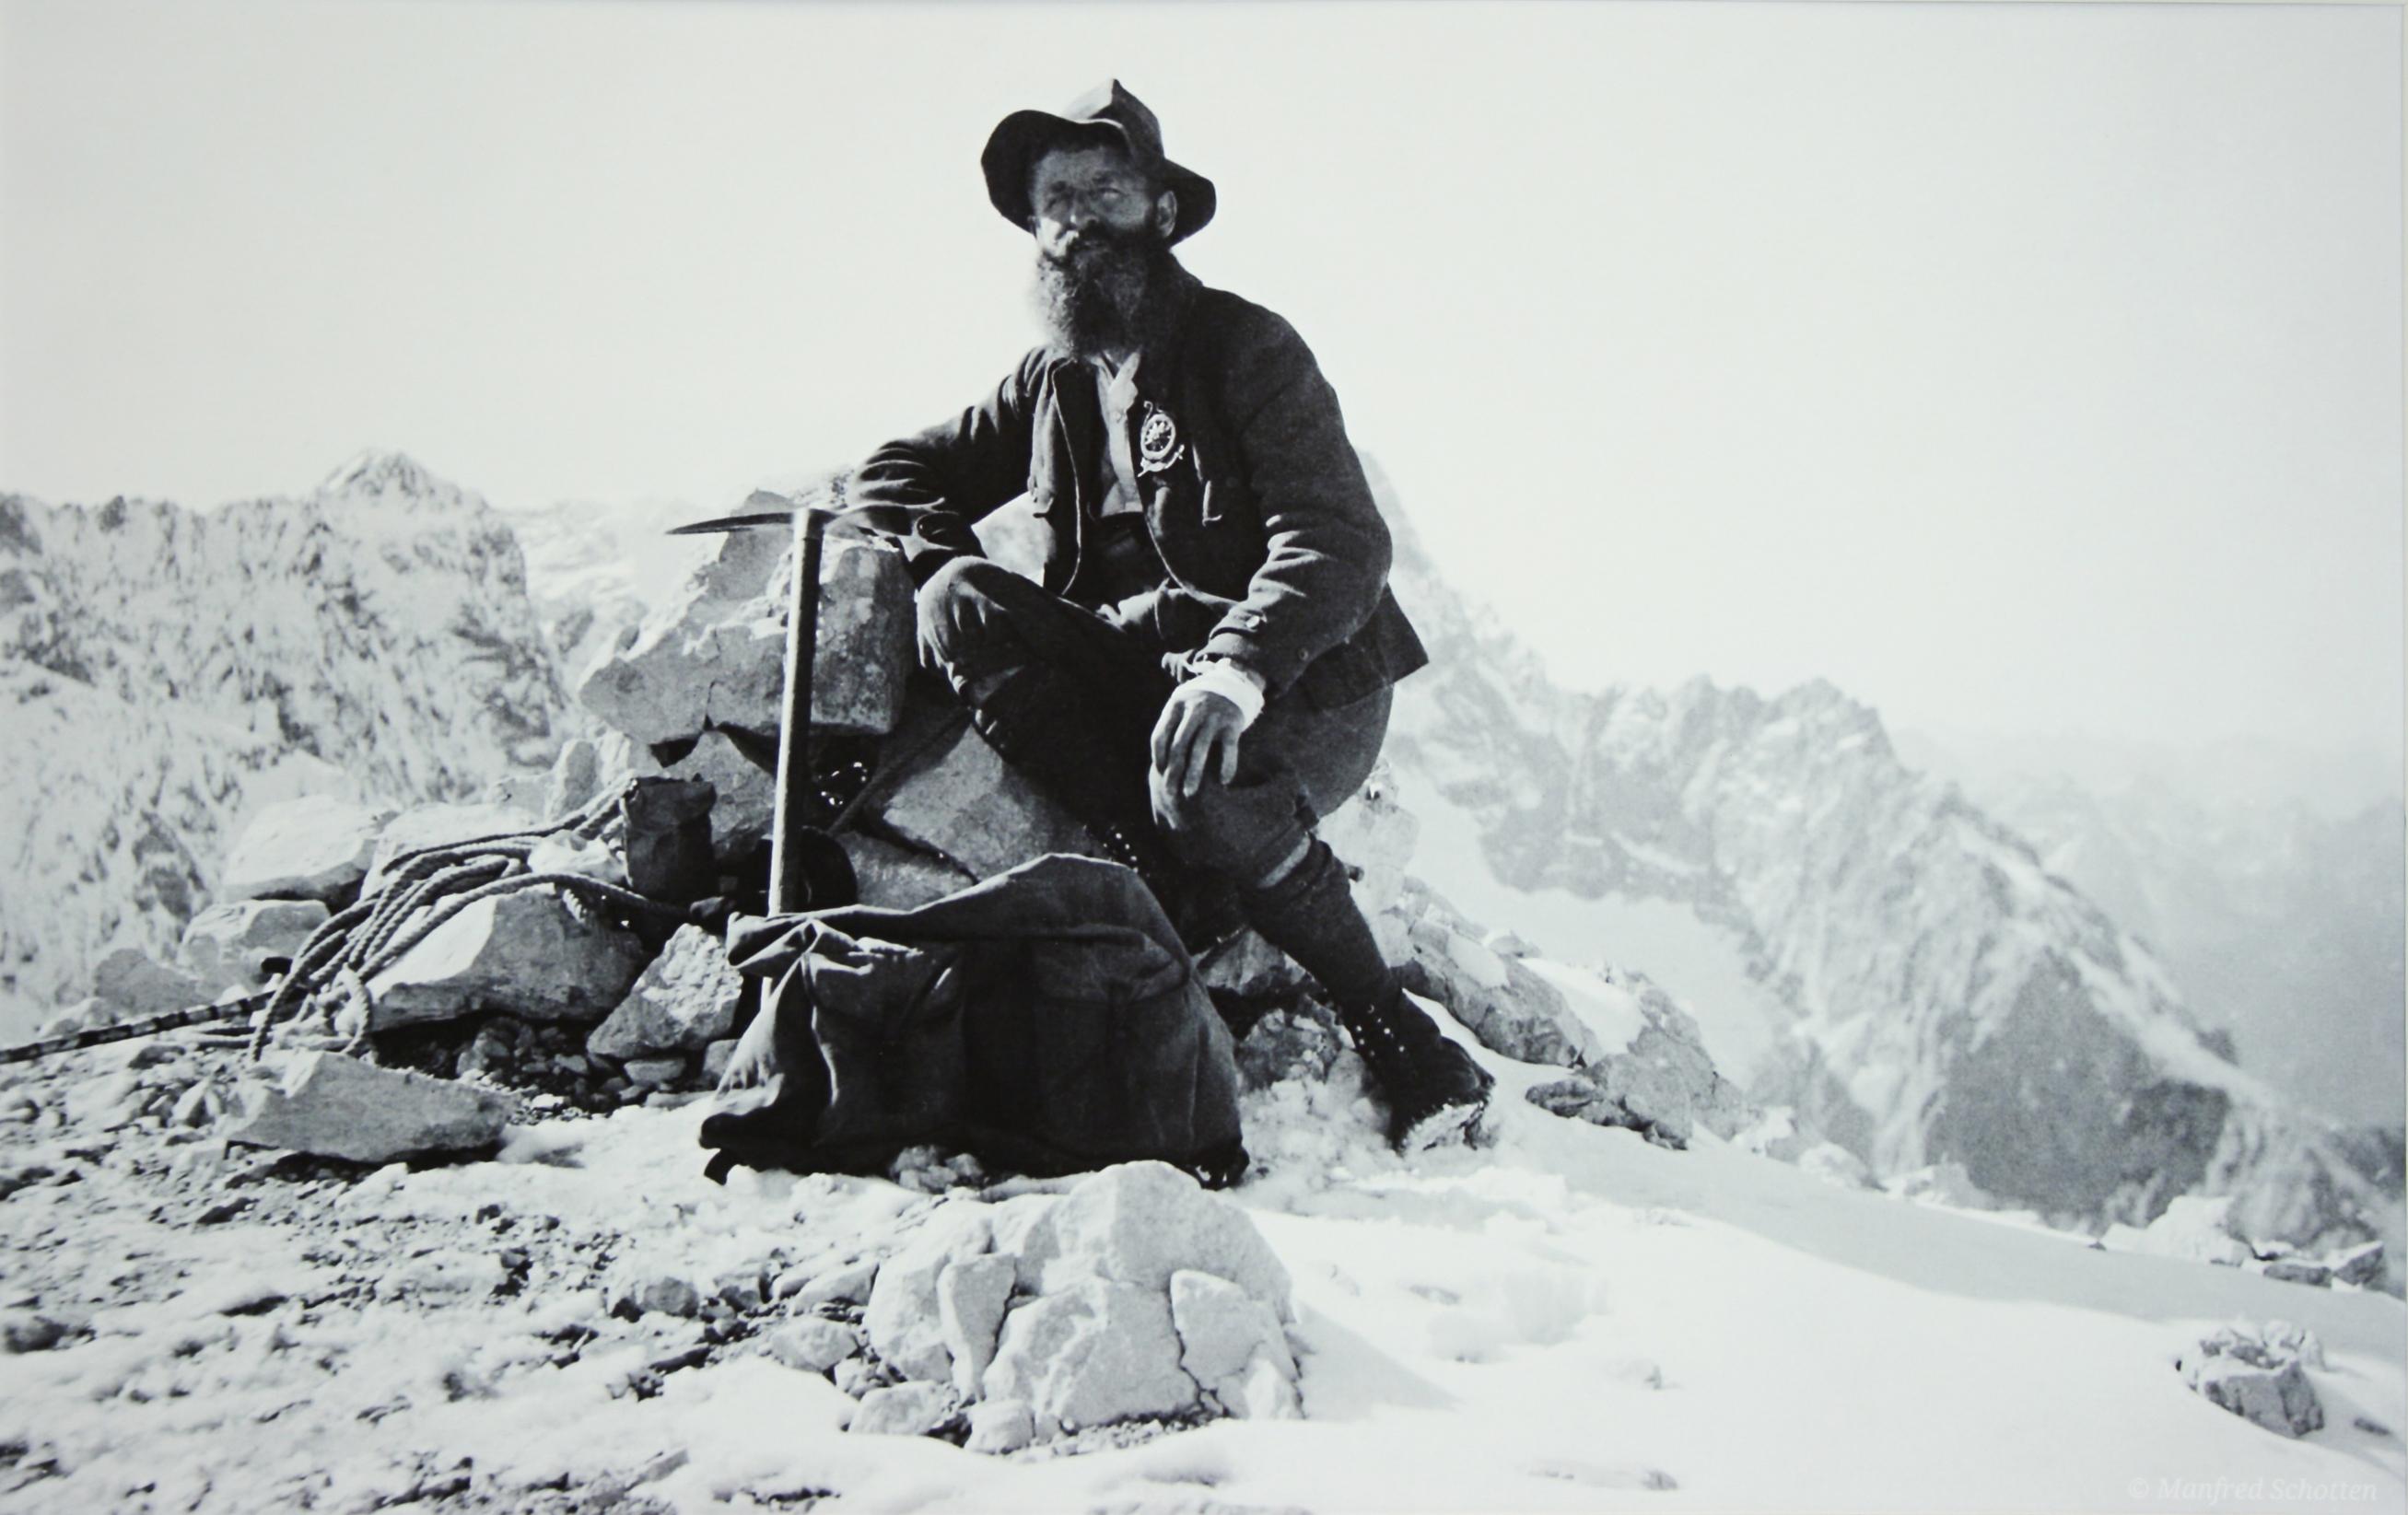 Vieille, ancienne photographie de ski alpin. sur l'Alpspitze avec le Zugspitze derrière, une nouvelle image photographique montée en noir et blanc d'après une photographie originale d'alpinisme des années 1930. Les photos alpines en noir et blanc